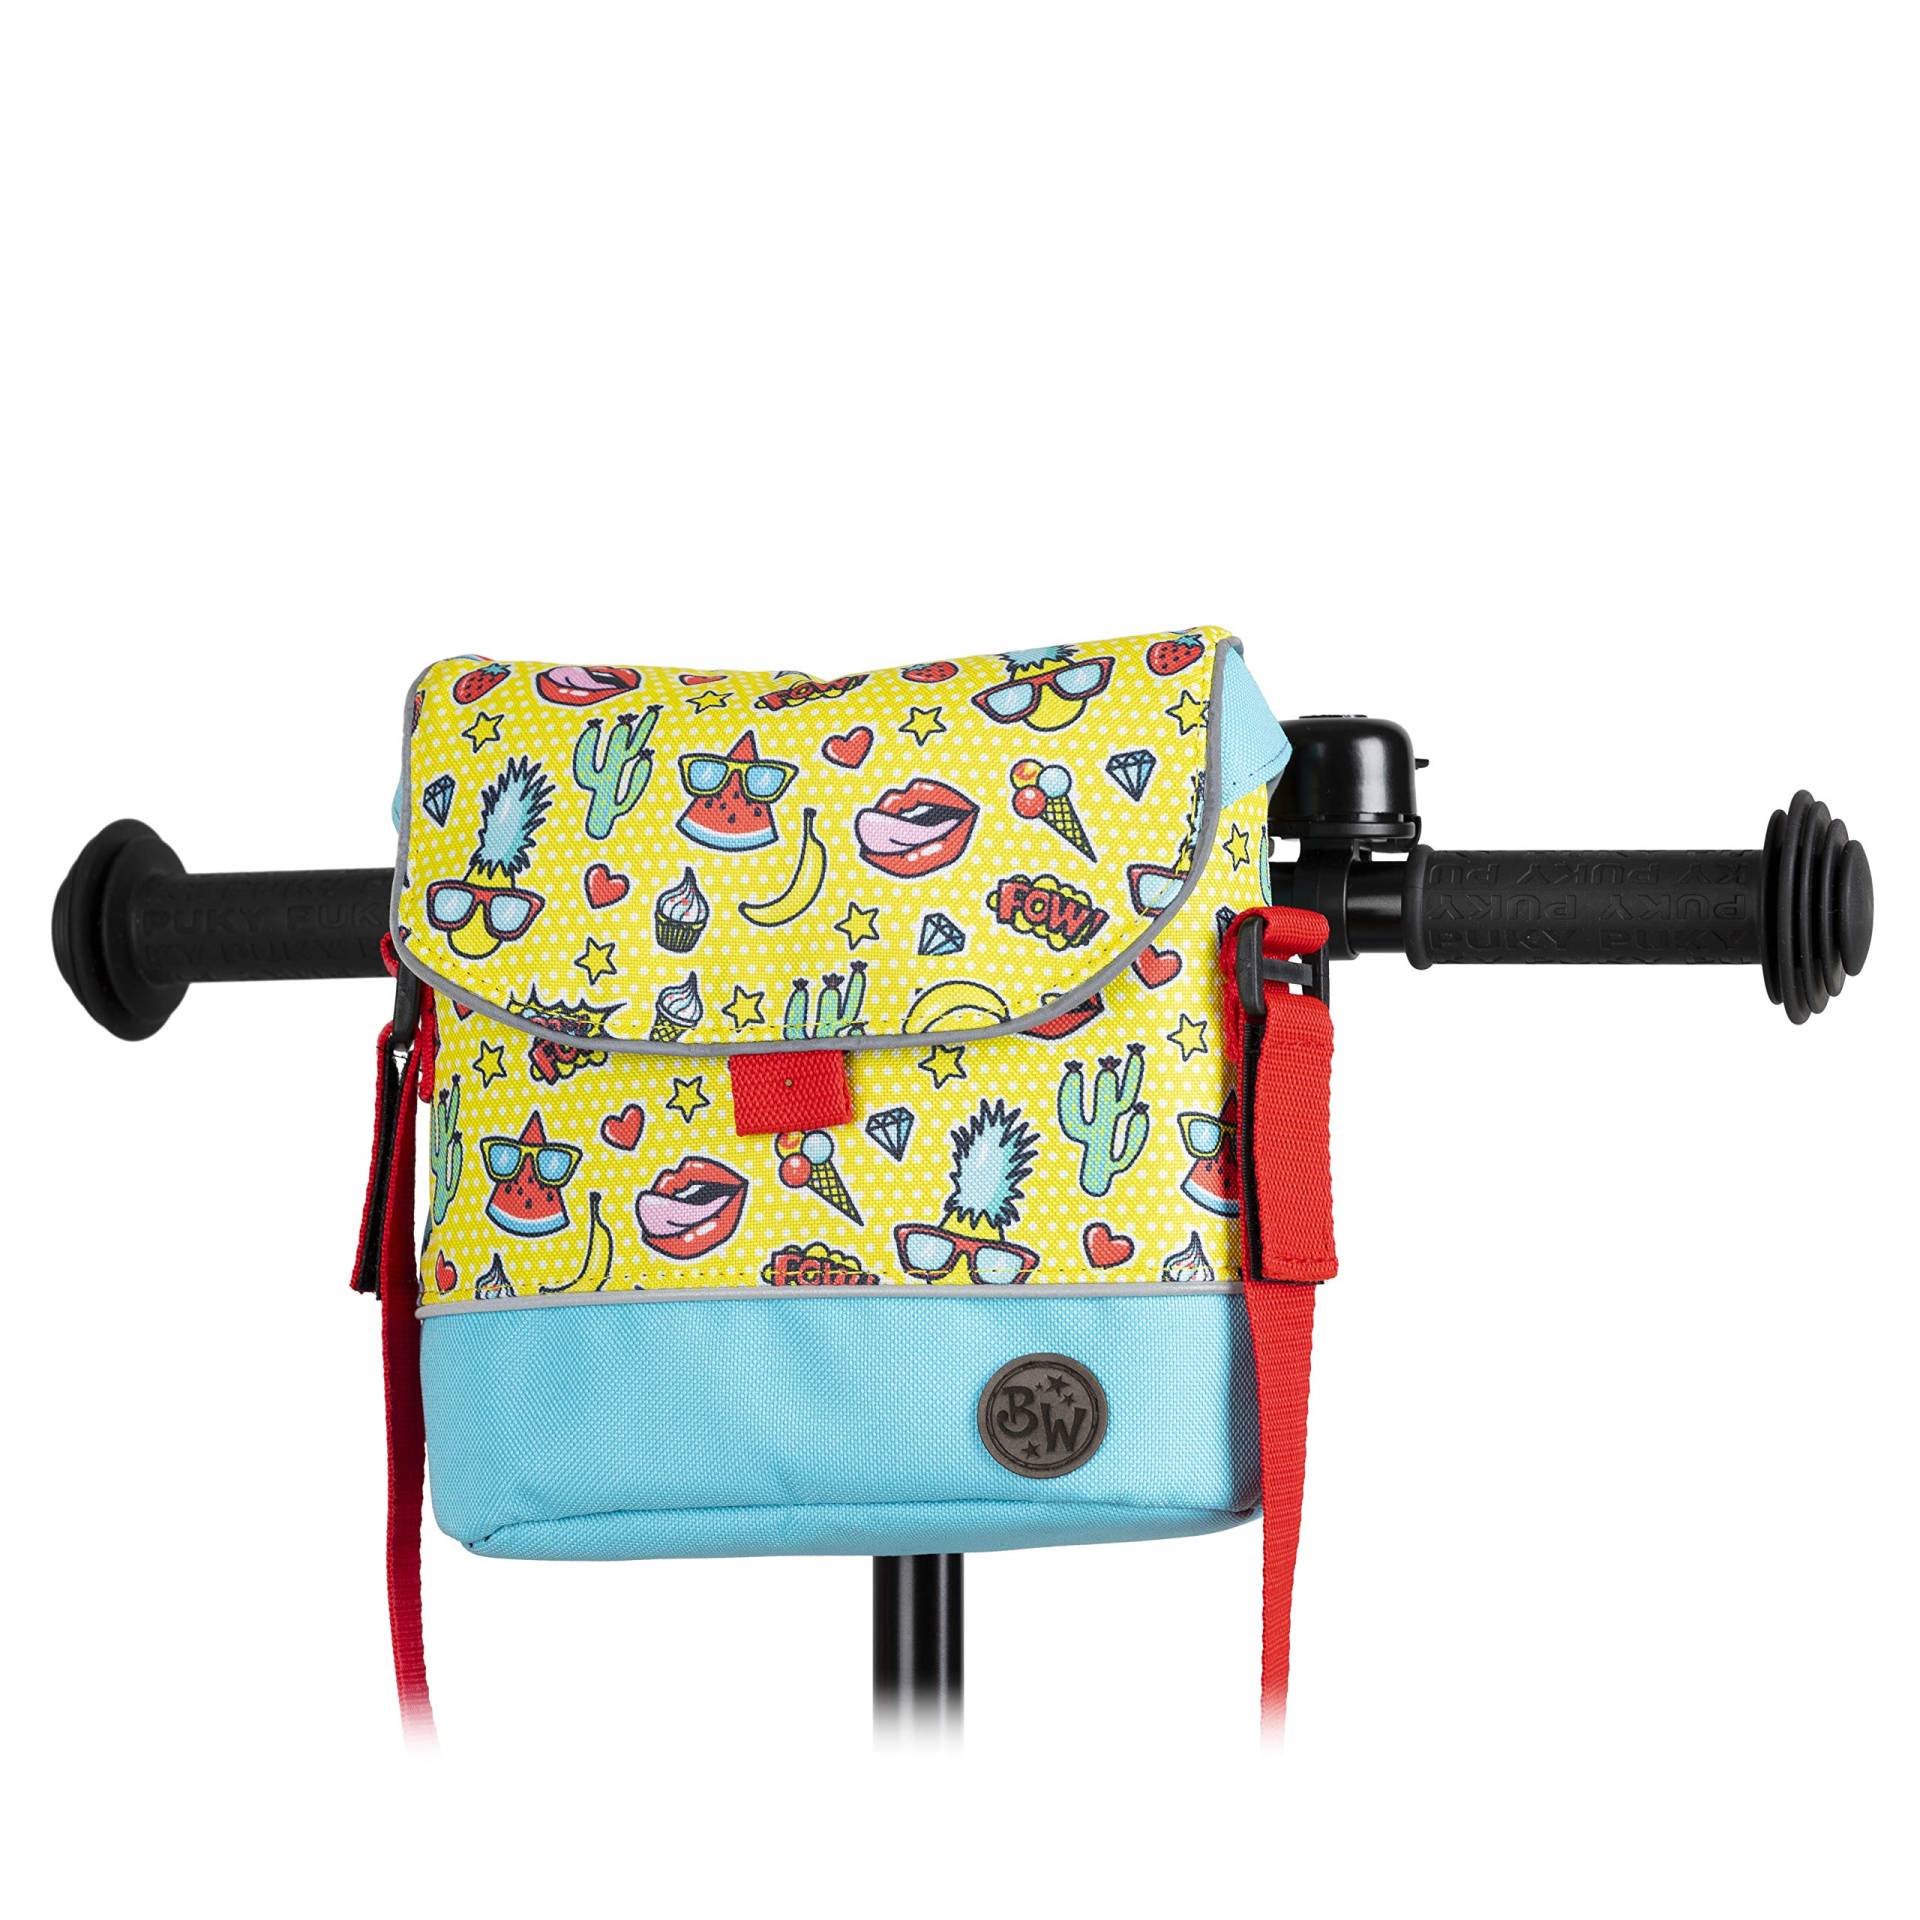 BAMBINIWELT Lenkertasche Tasche kompatibel mit Puky mit Woom Laufrad Räder Roller Fahrrad Fahrradtasche für Kinder wasserabweisend mit Schultergurt (Modell 18) von BambiniWelt by Rafael K.